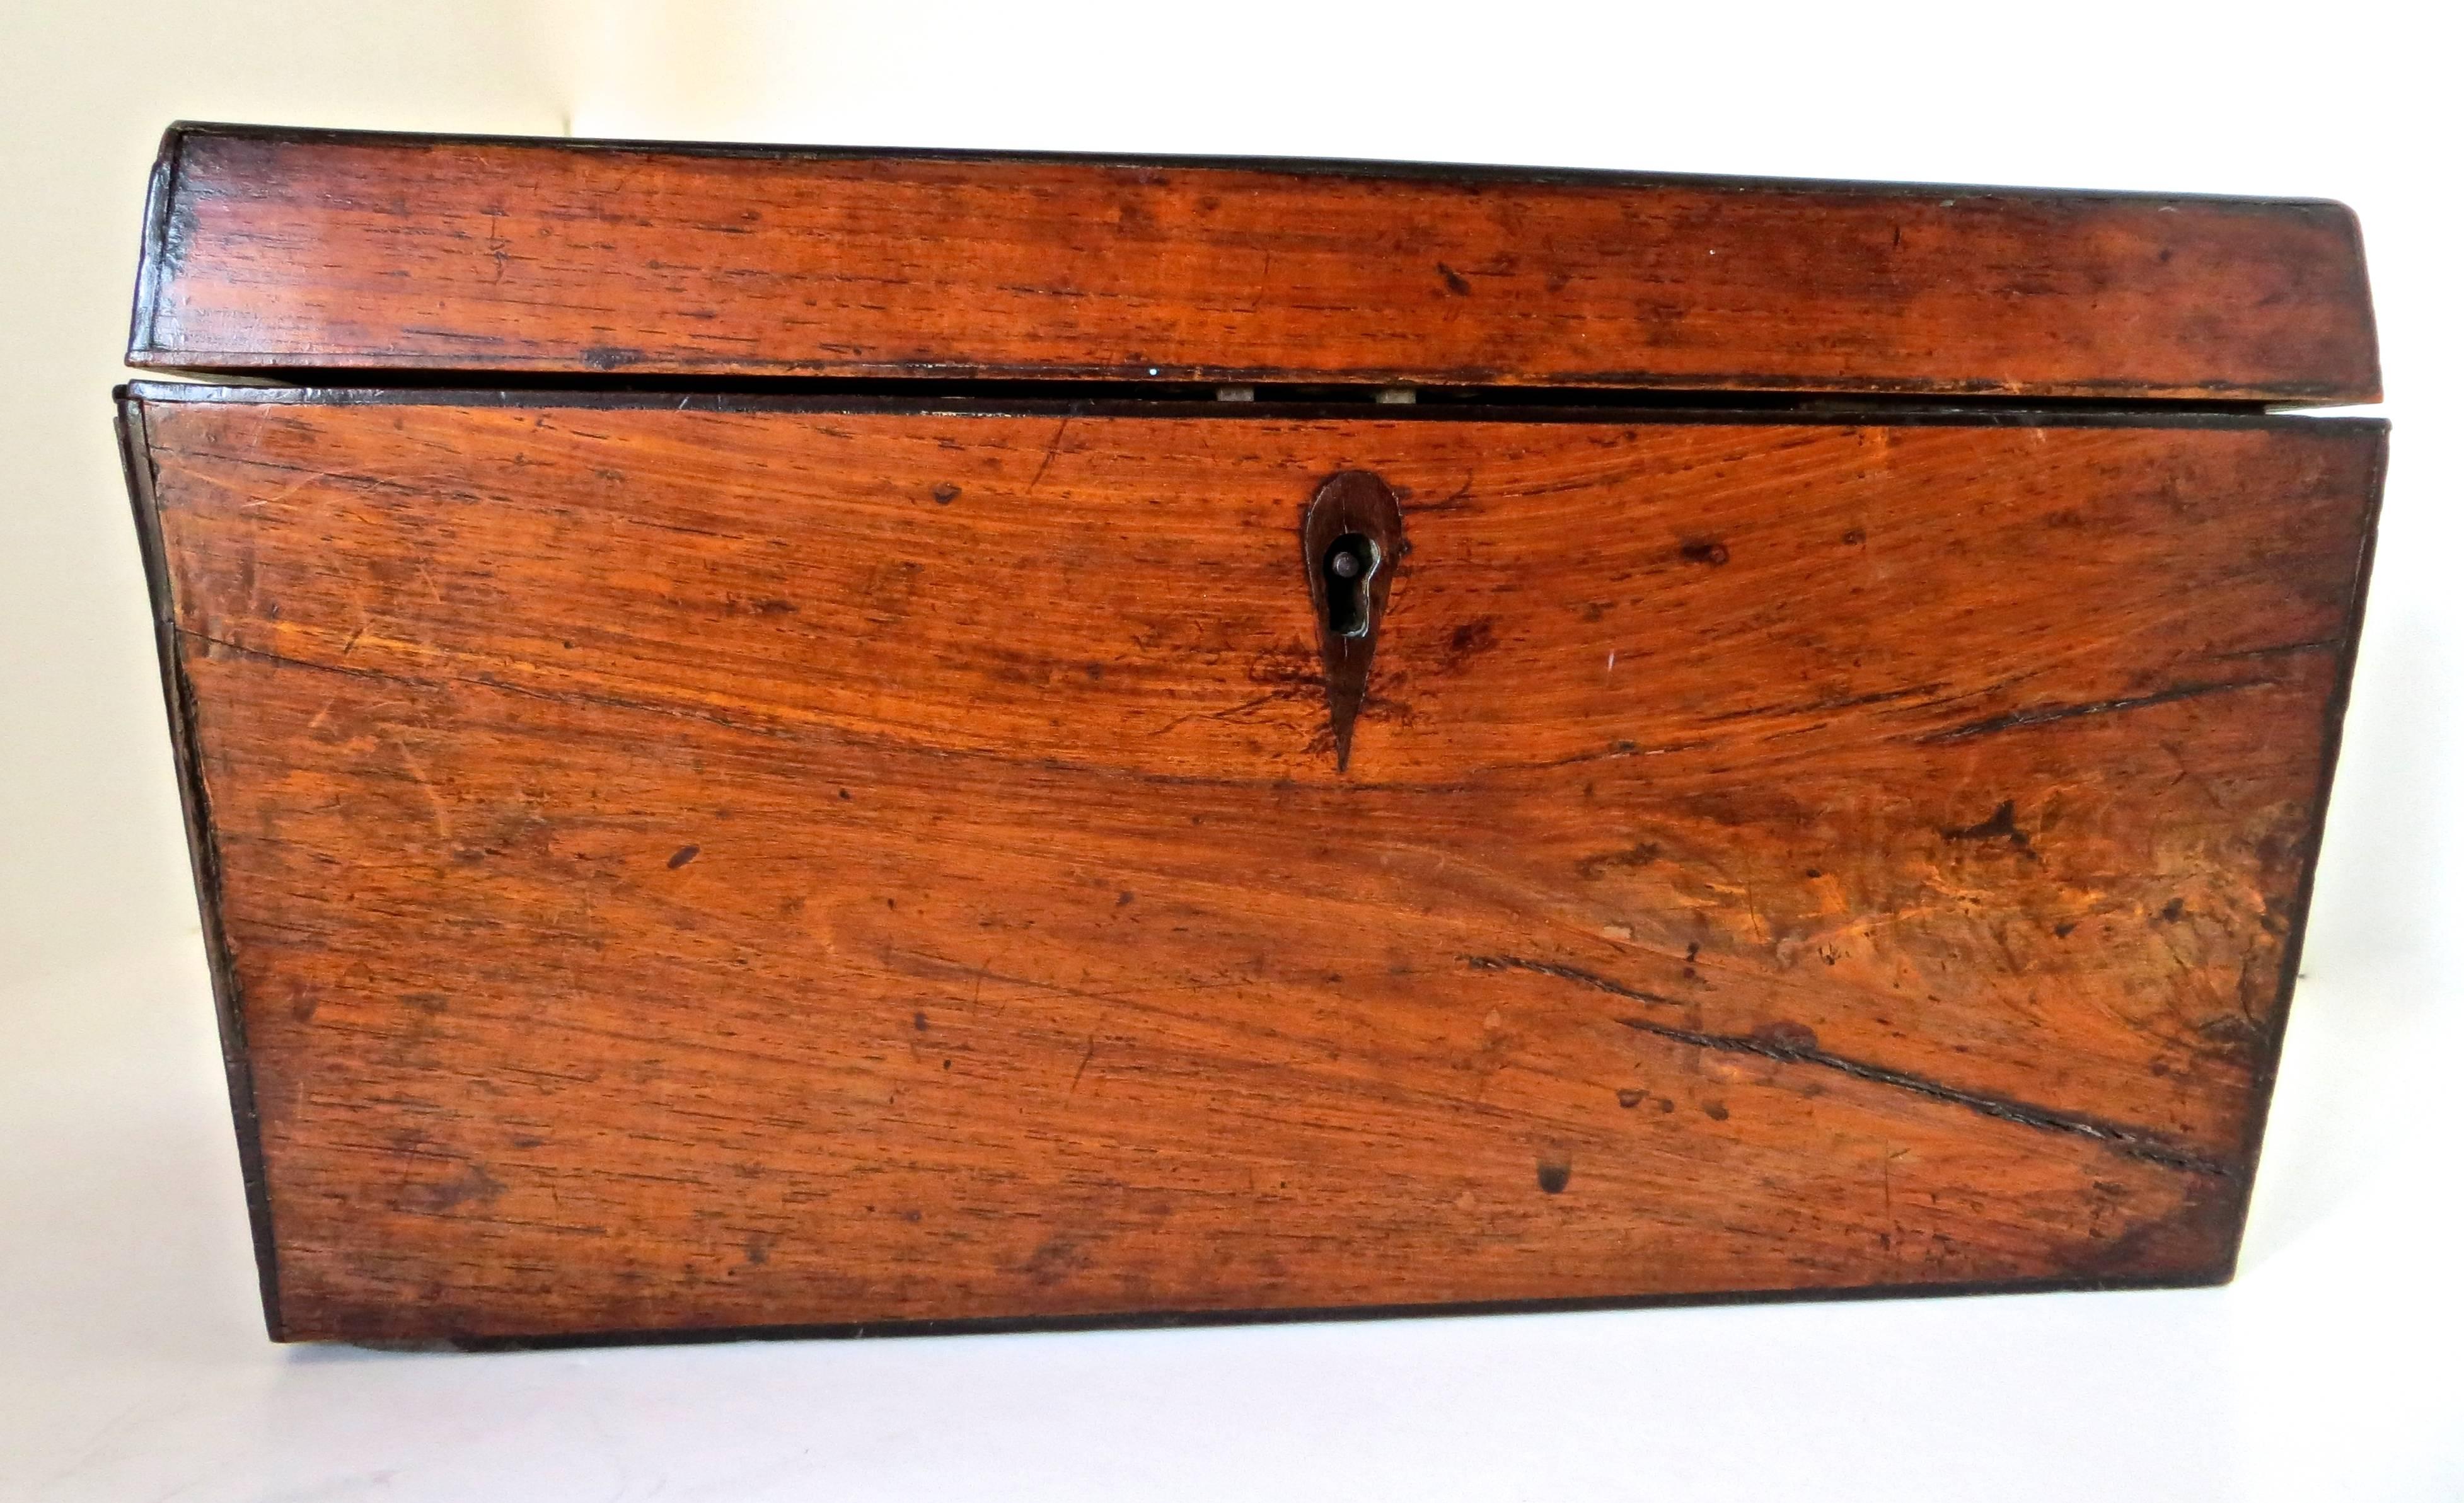 Belle patine d'usage sur cette boîte à thé en acajou anglais du XVIIIe siècle, avec trois compartiments intérieurs. Deux sections d'extrémité ont des couvercles sculptés géométriques incisés. De forme fuselée de haut en bas, la boîte à thé était